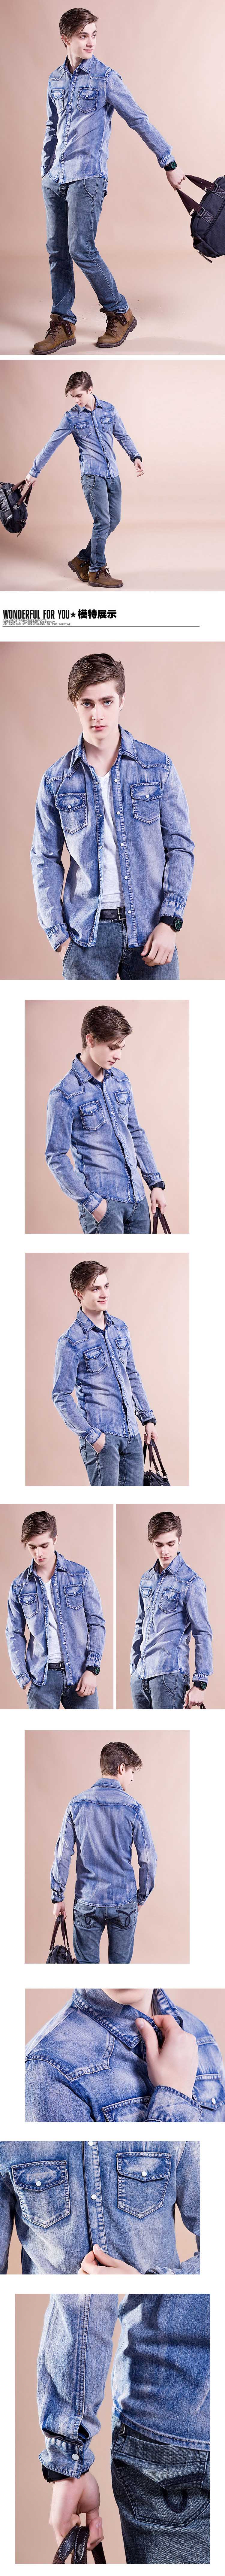 jual jaket pria denim dengan bahan jeans stretch kualitas import